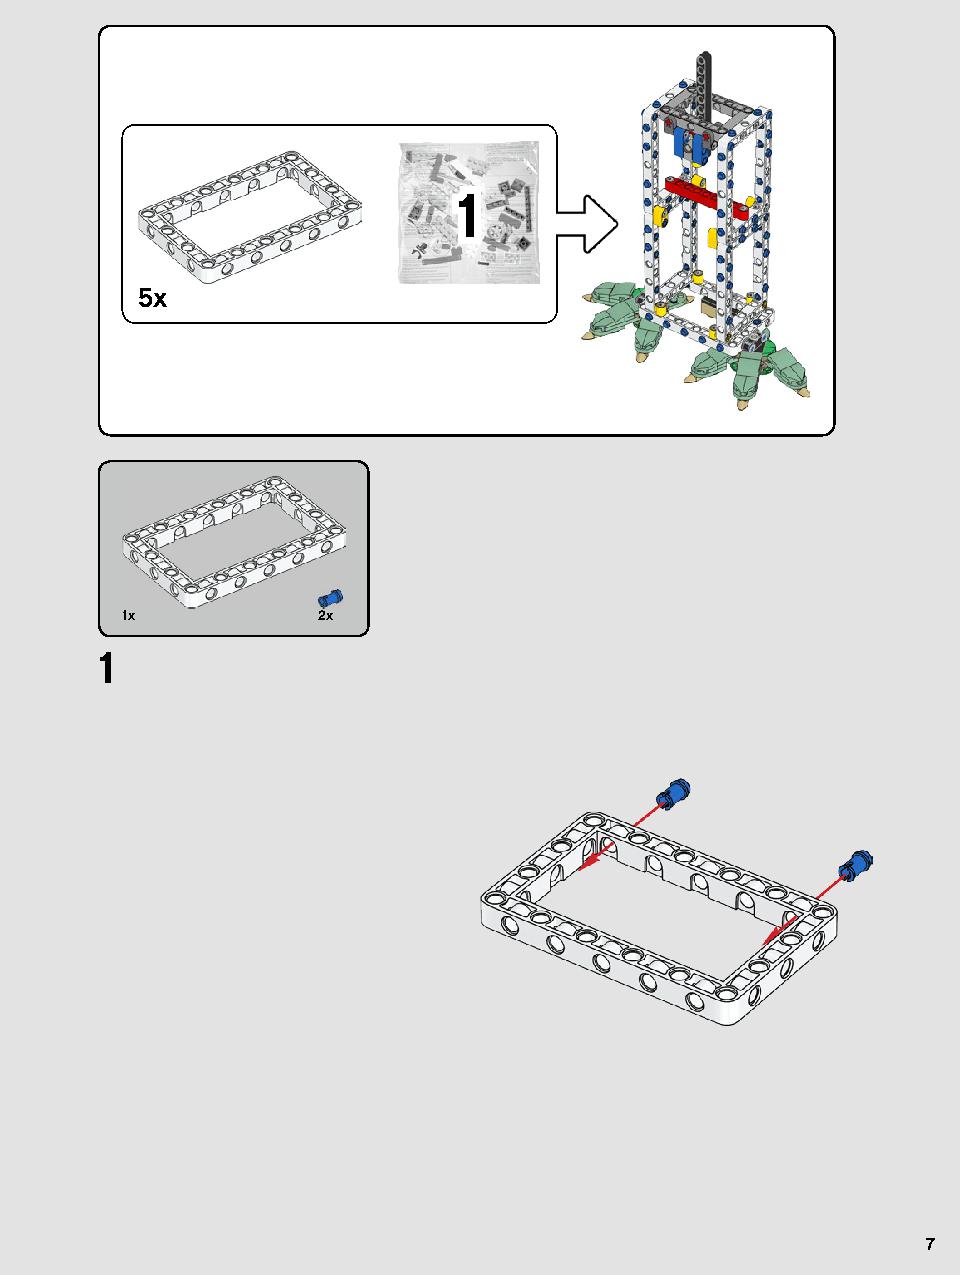 ヨーダ™ 75255 レゴの商品情報 レゴの説明書・組立方法 7 page